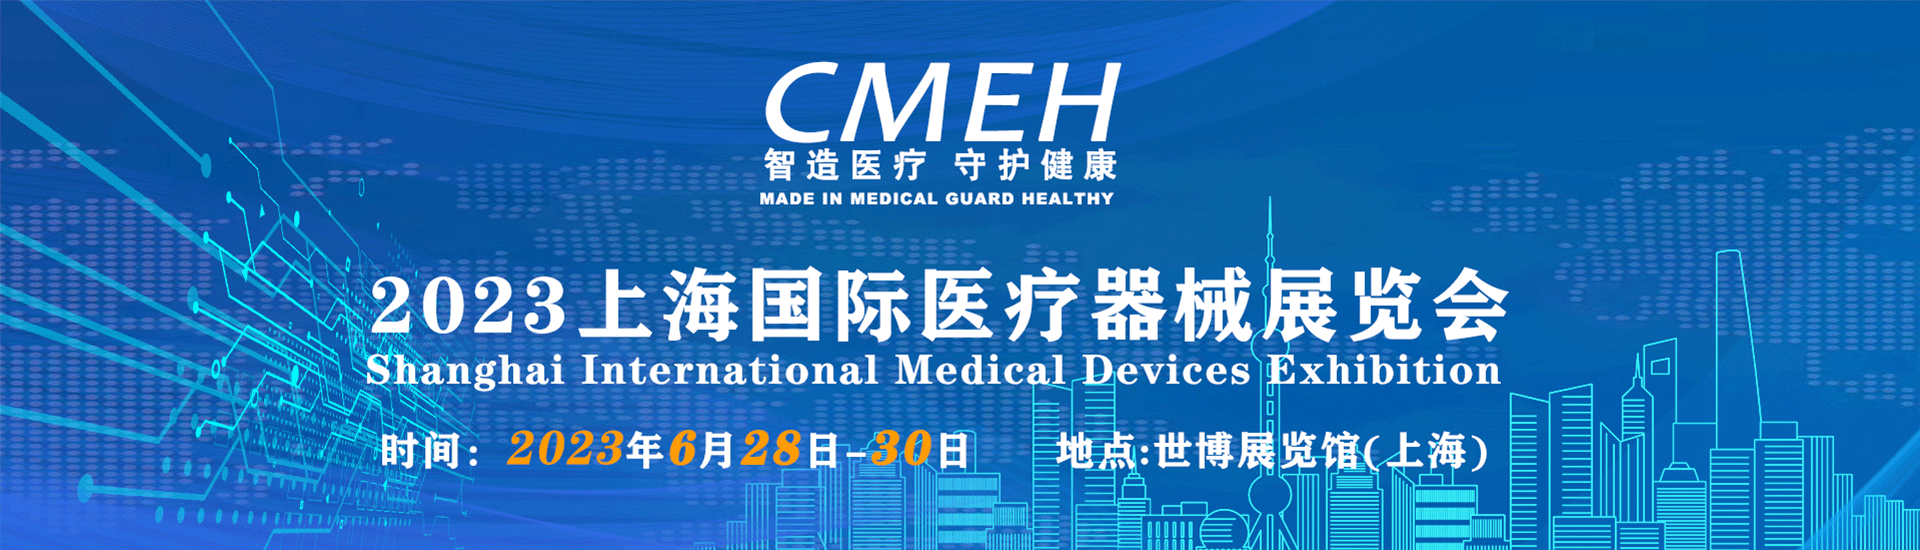 医疗设备展会-上海医疗器械展会-全国医疗器械展会时间